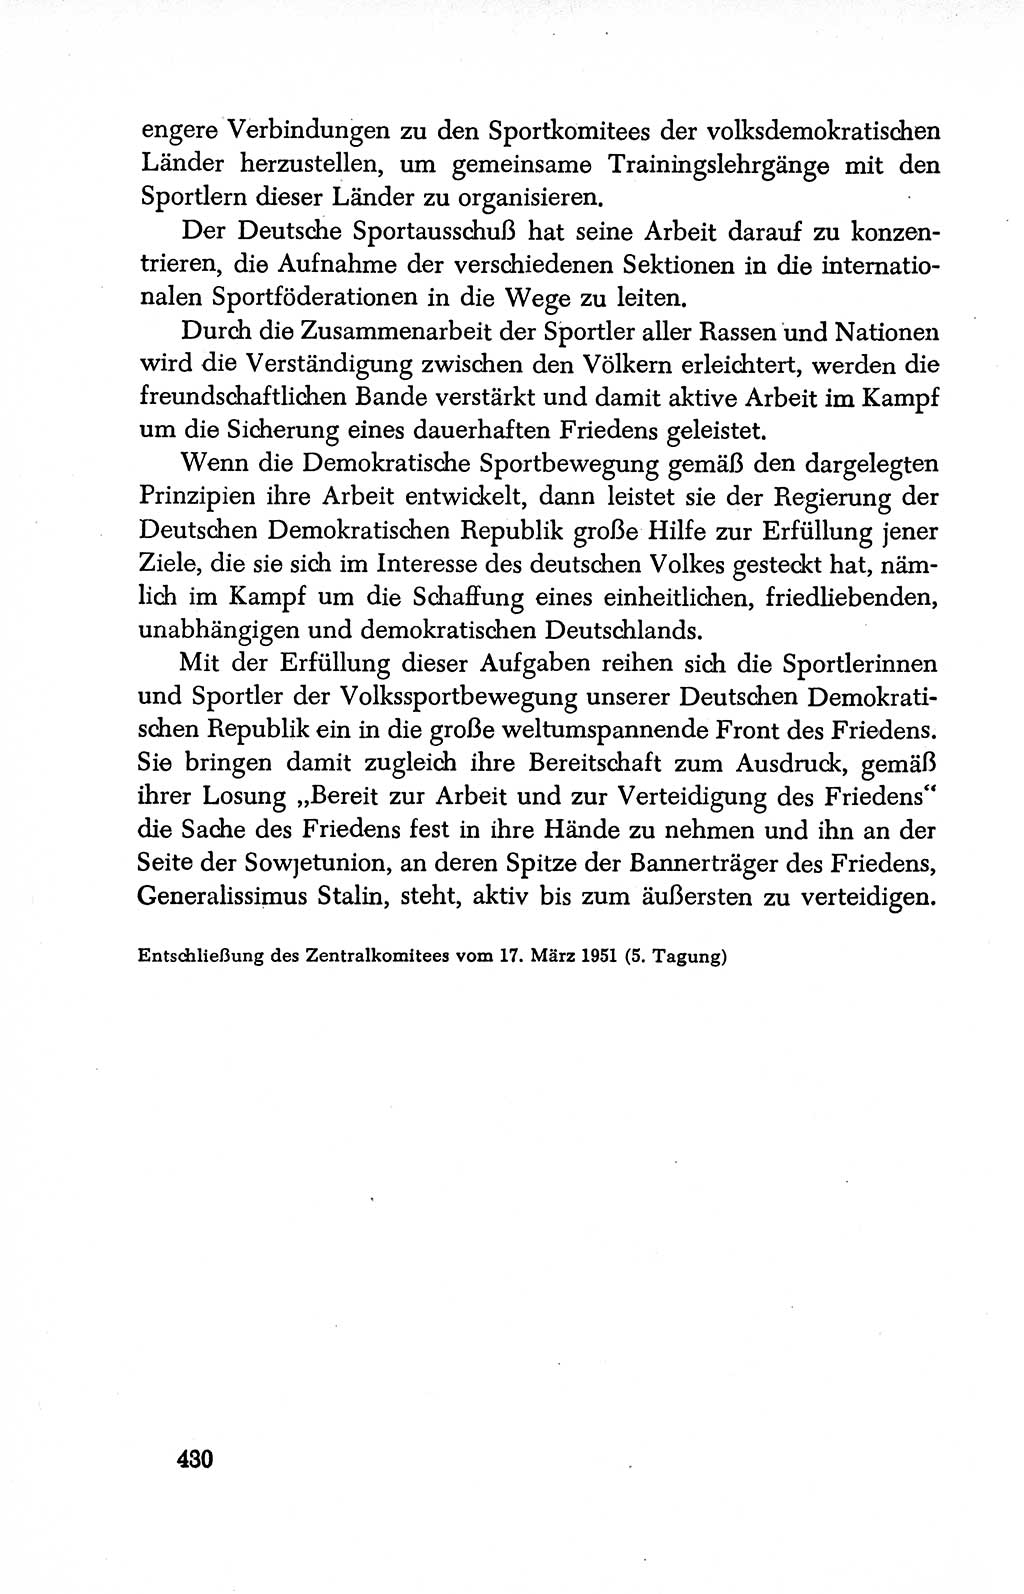 Dokumente der Sozialistischen Einheitspartei Deutschlands (SED) [Deutsche Demokratische Republik (DDR)] 1950-1952, Seite 430 (Dok. SED DDR 1950-1952, S. 430)